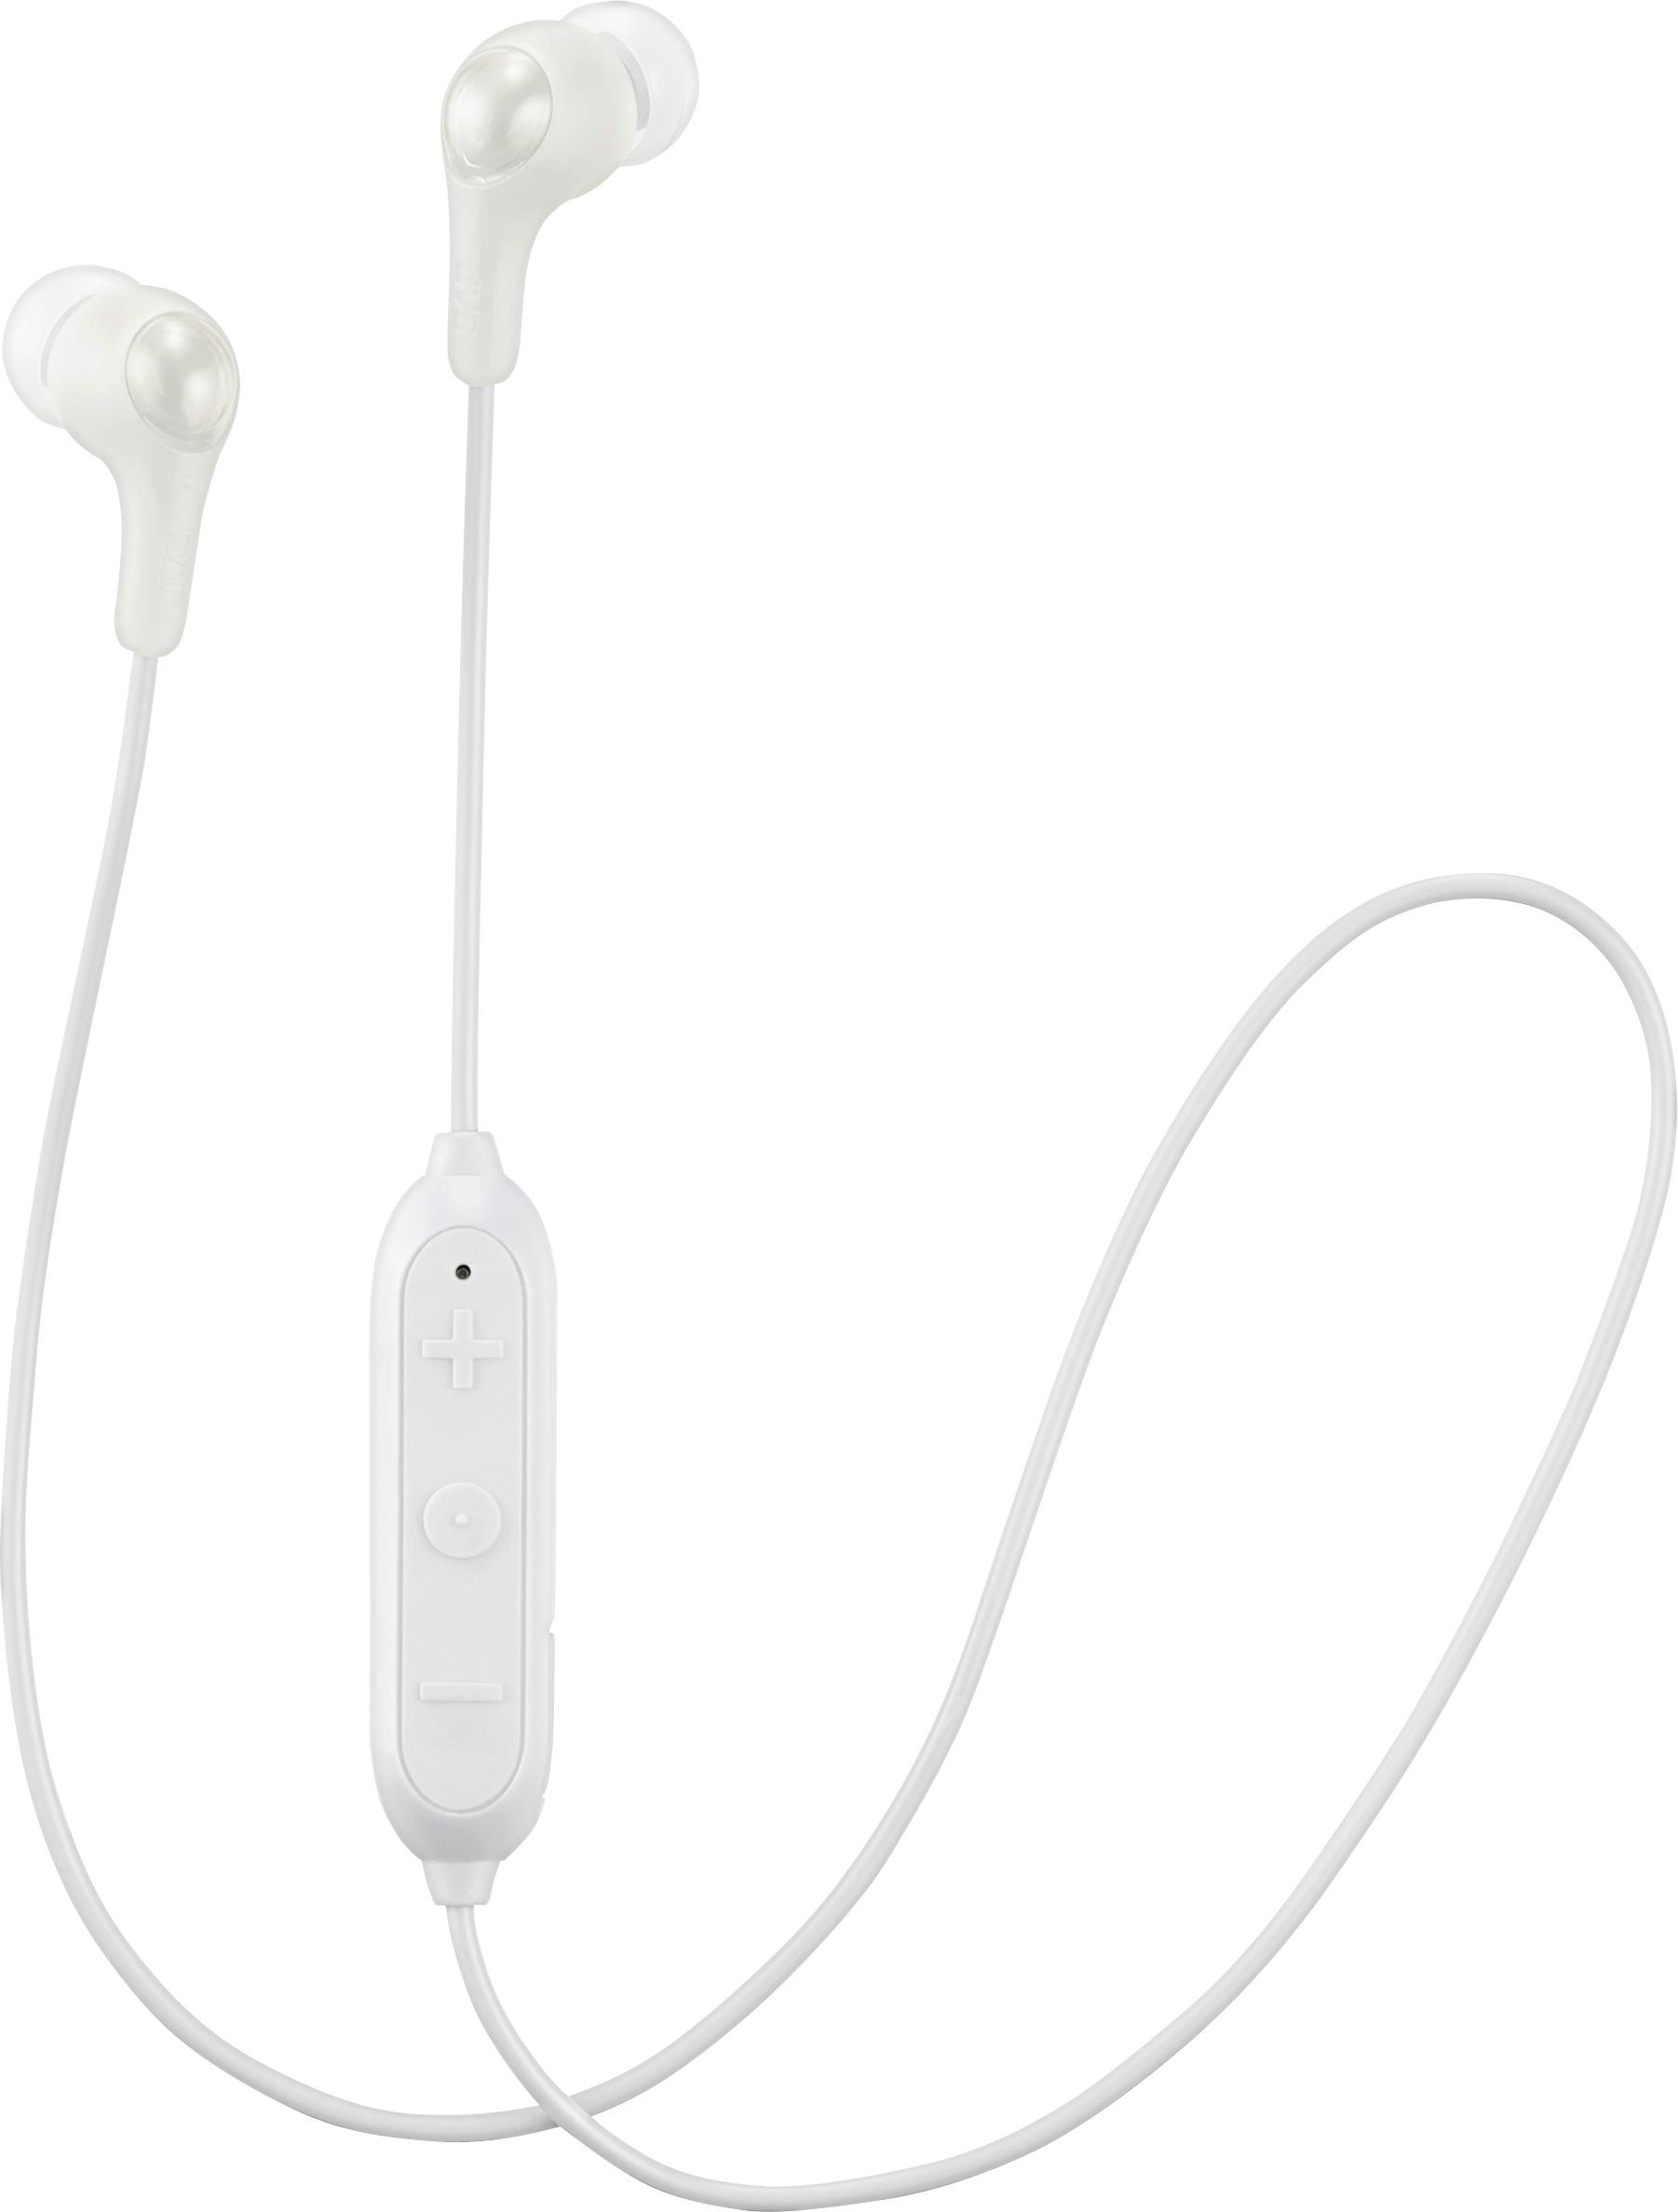 Angle View: JVC - HA EN10BT Gumy Sport Wireless In-Ear Headphones - White/Green